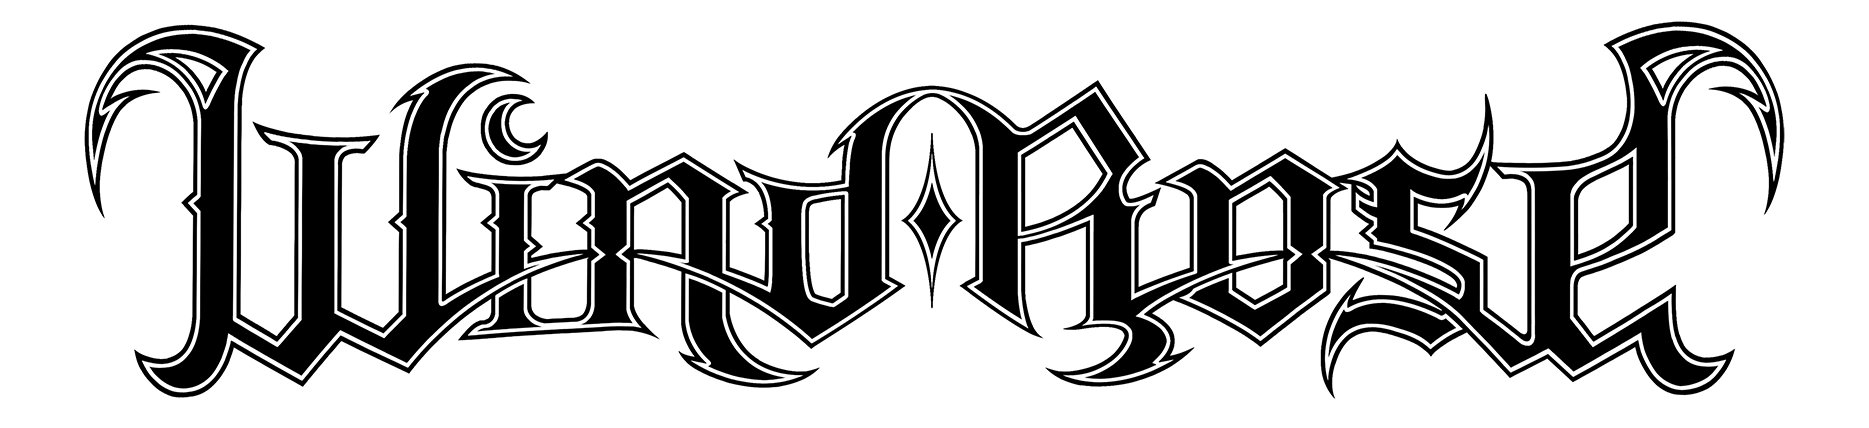 Band logo Wind Rose - black font-colour - transparent background